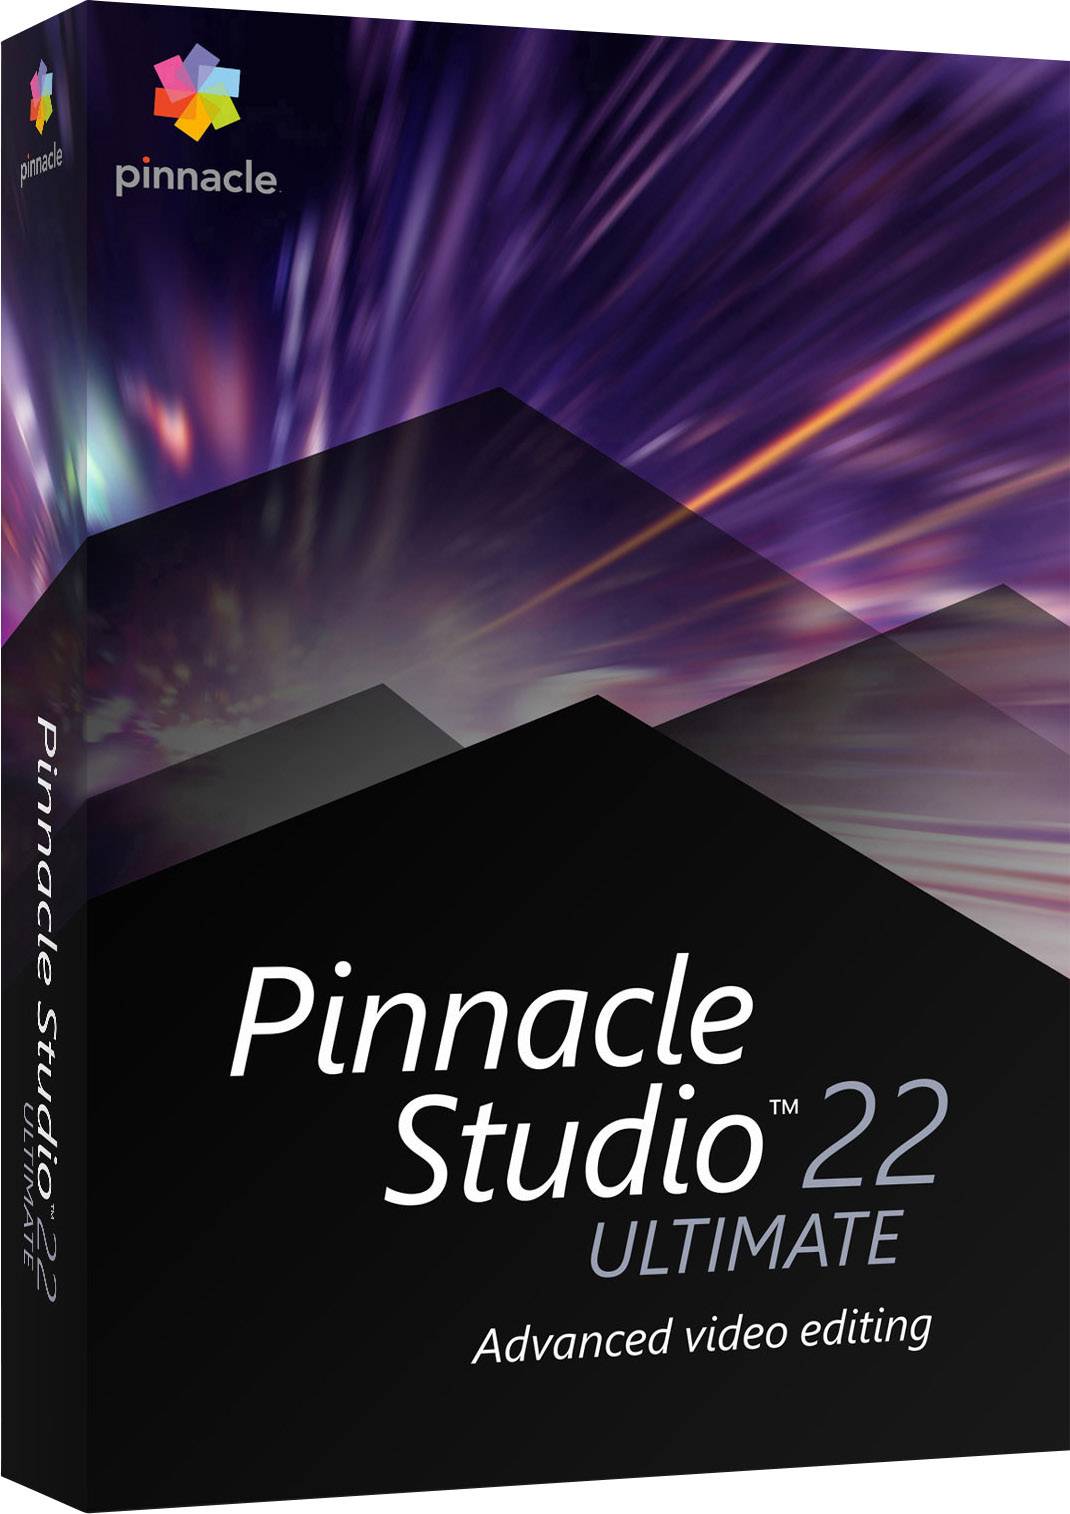 reverse detach audio in pinnacle studio 22